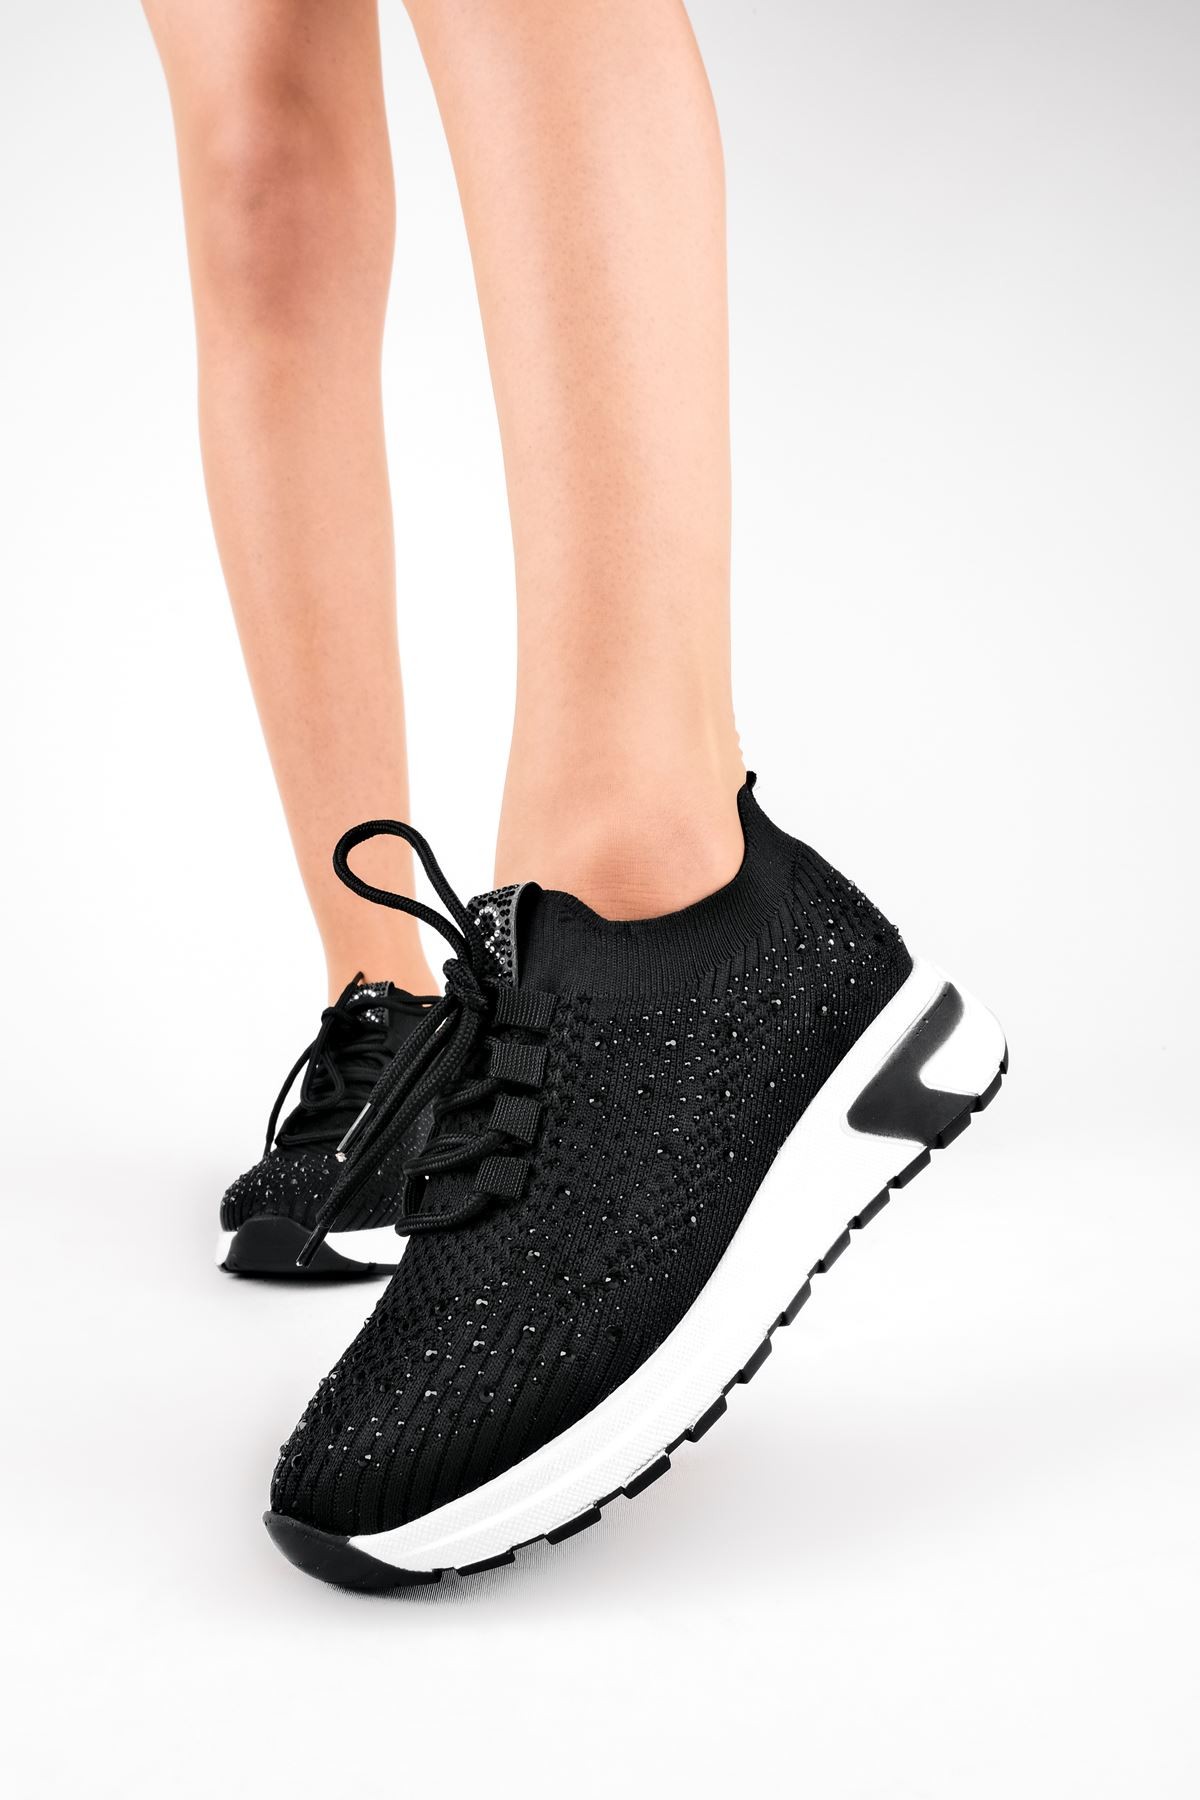 Nessy Triko Taşlı Kadın Spor Ayakkabı (B3081) - Siyah